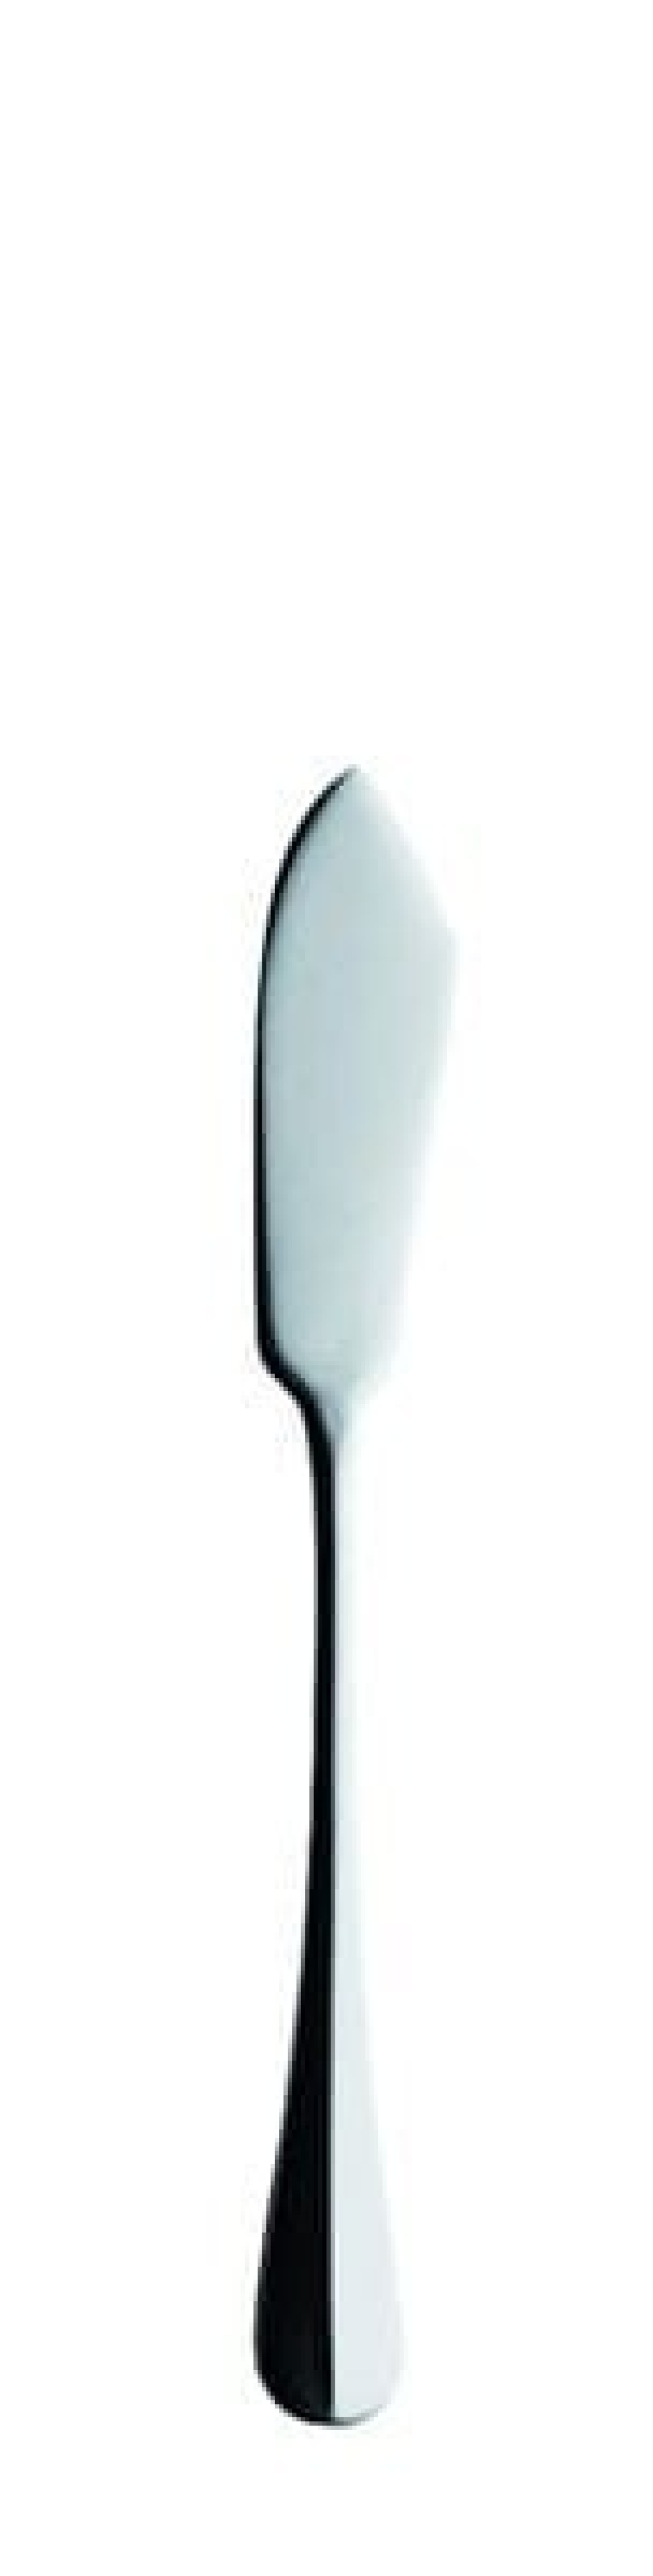 Nóż do ryb Baguette, 208 mm w grupie Nakrycie stołu / Sztućce / Noże w The Kitchen Lab (1284-14157)